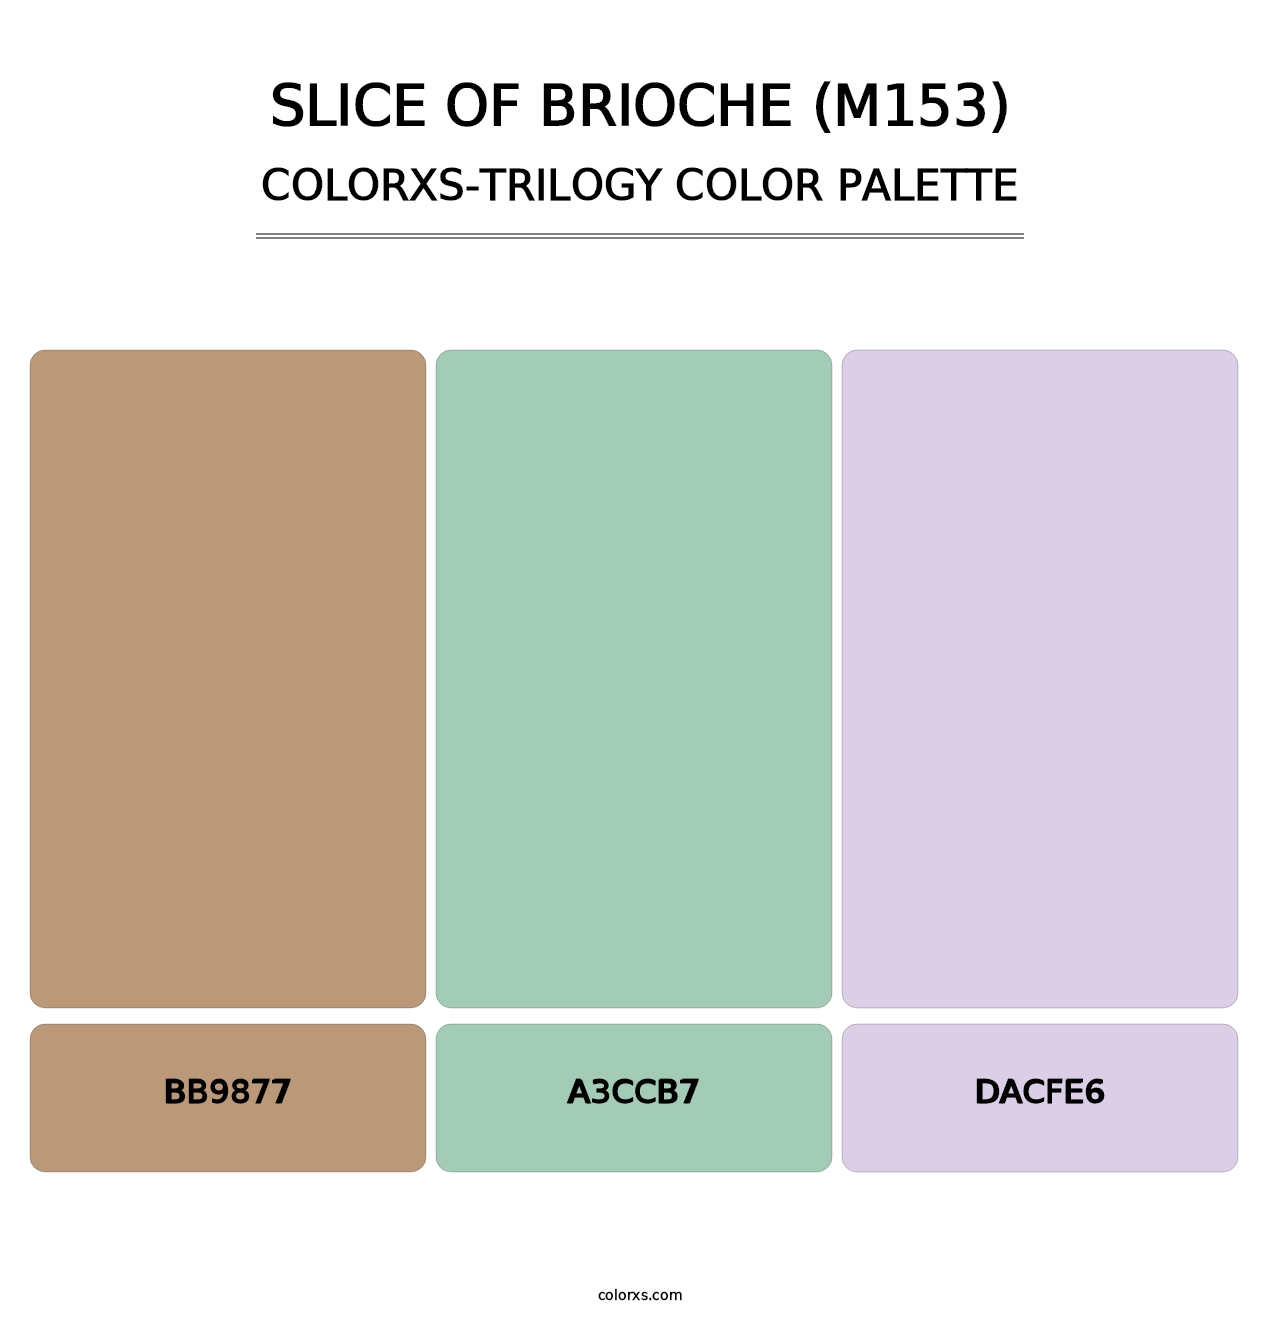 Slice of Brioche (M153) - Colorxs Trilogy Palette